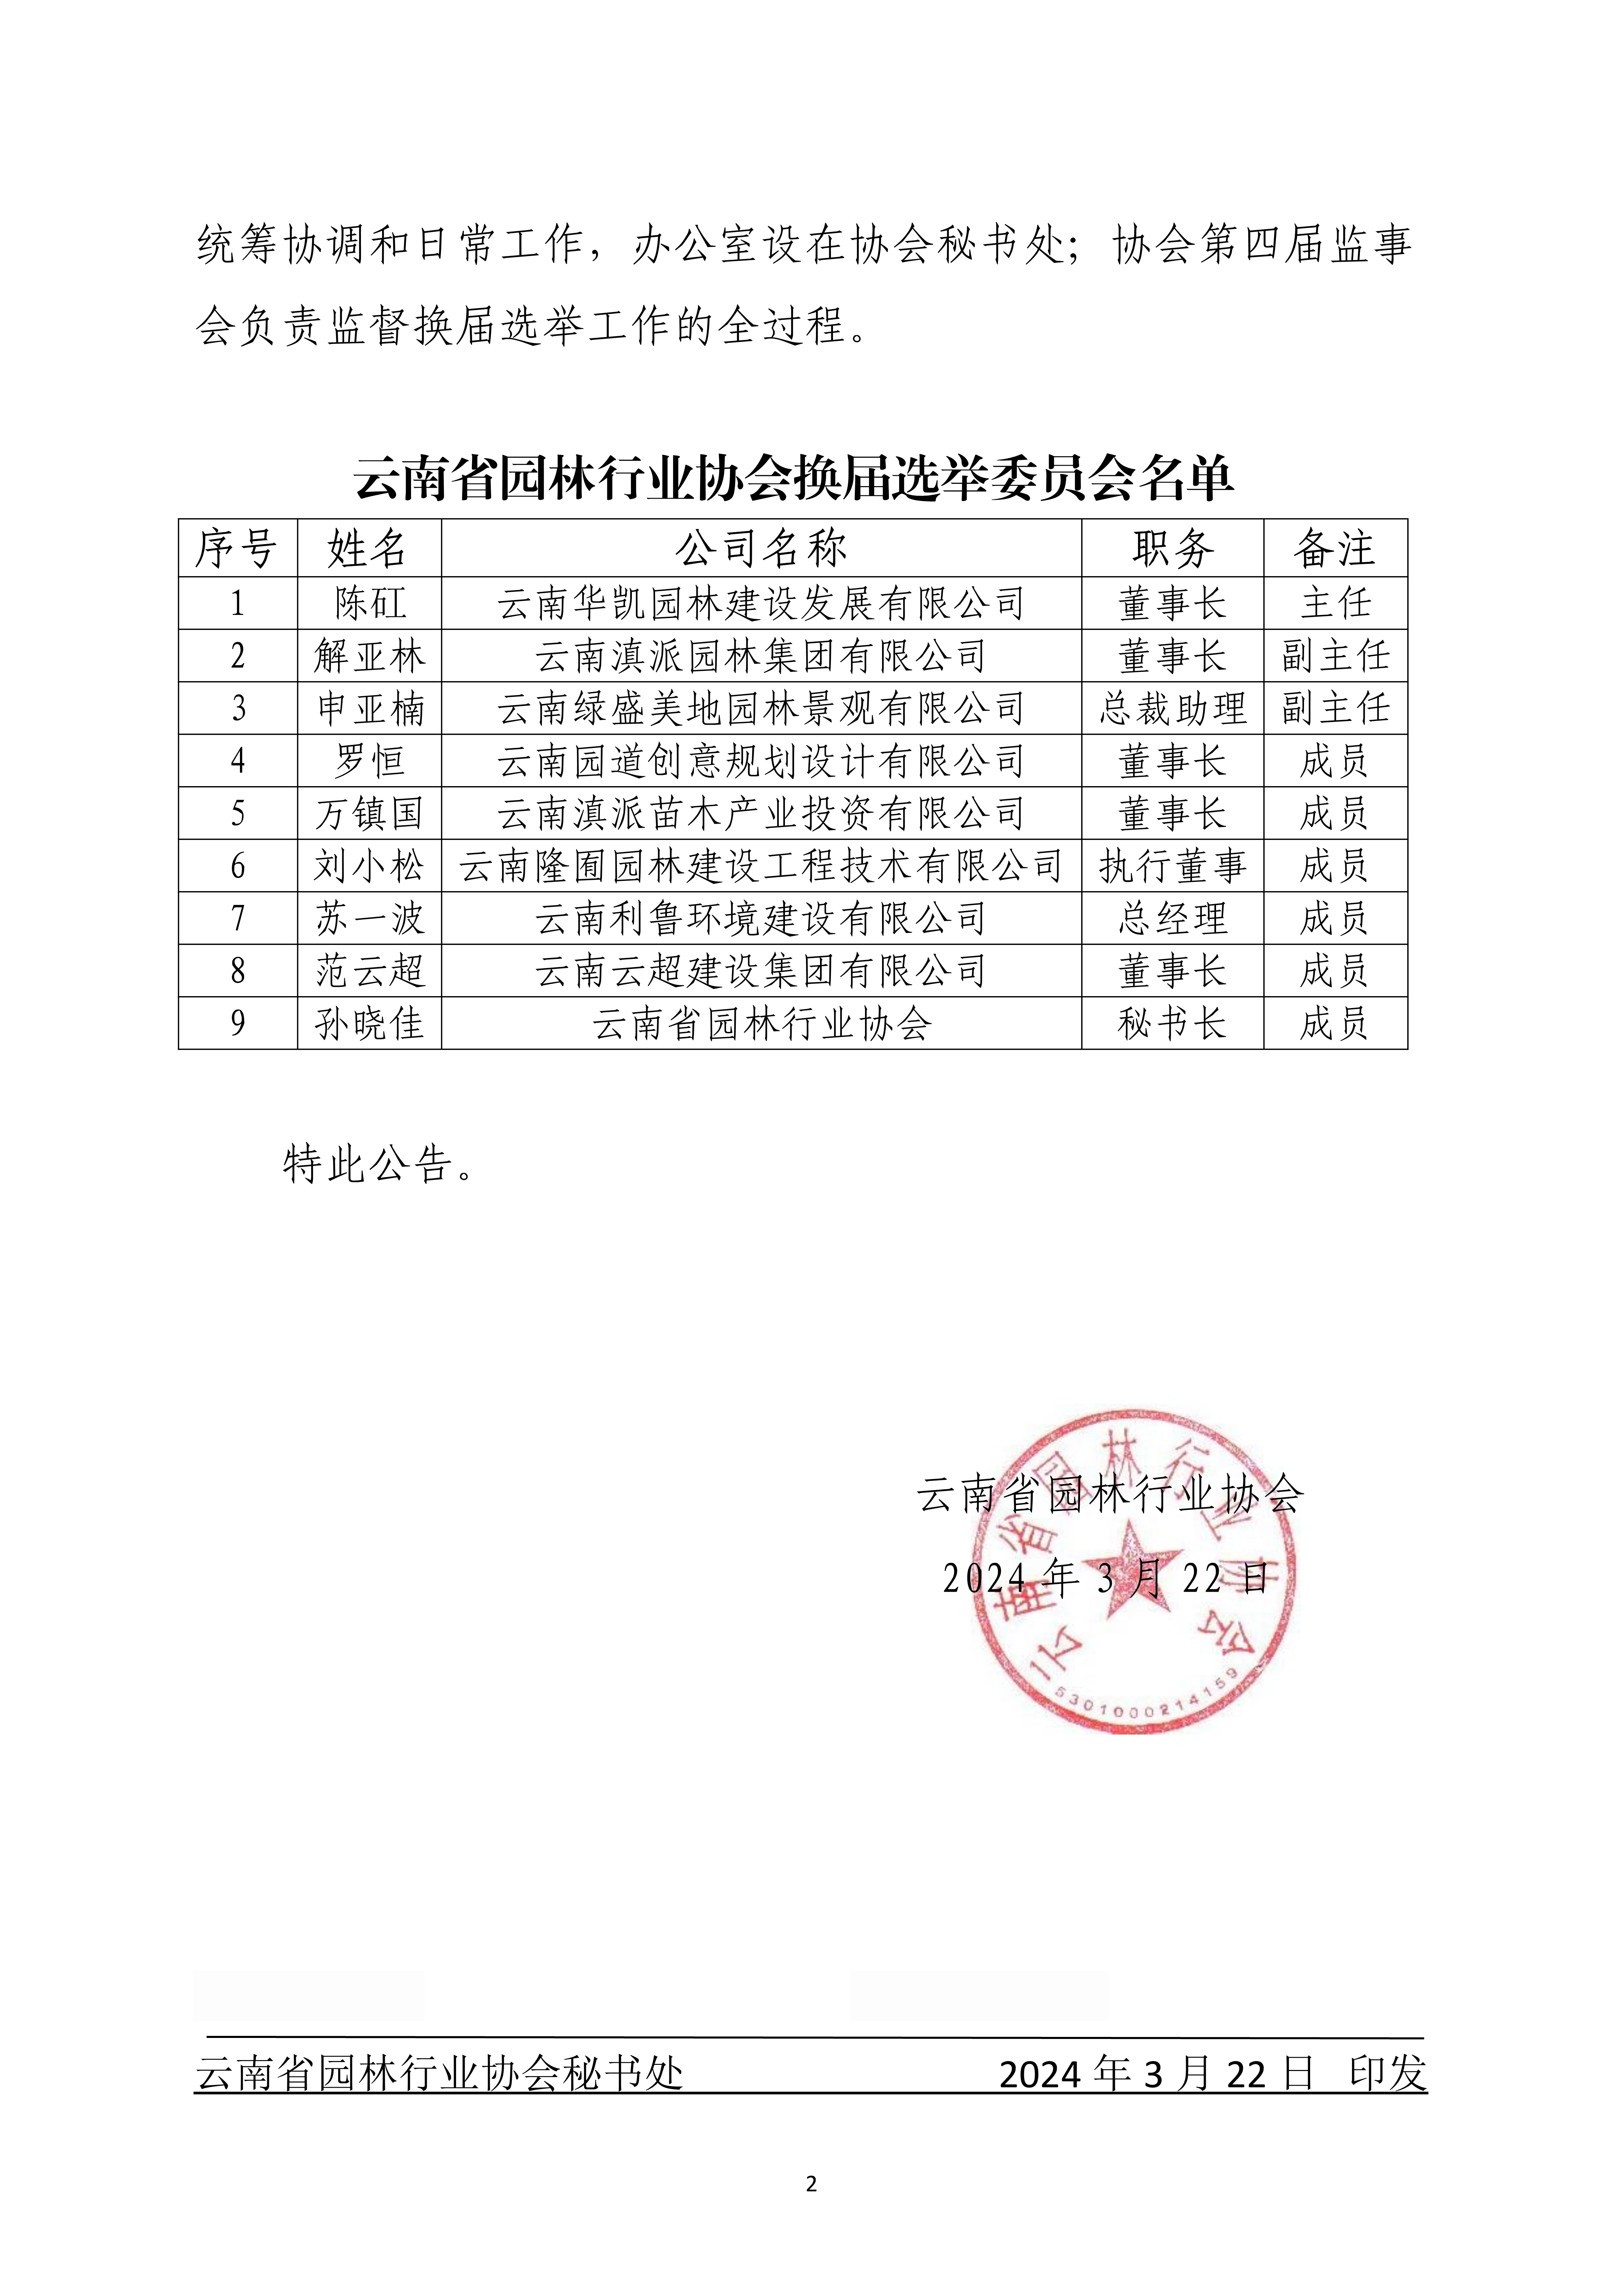 3.22云南省园林行业协会关于成立换届选举委员会的公告_2.jpg